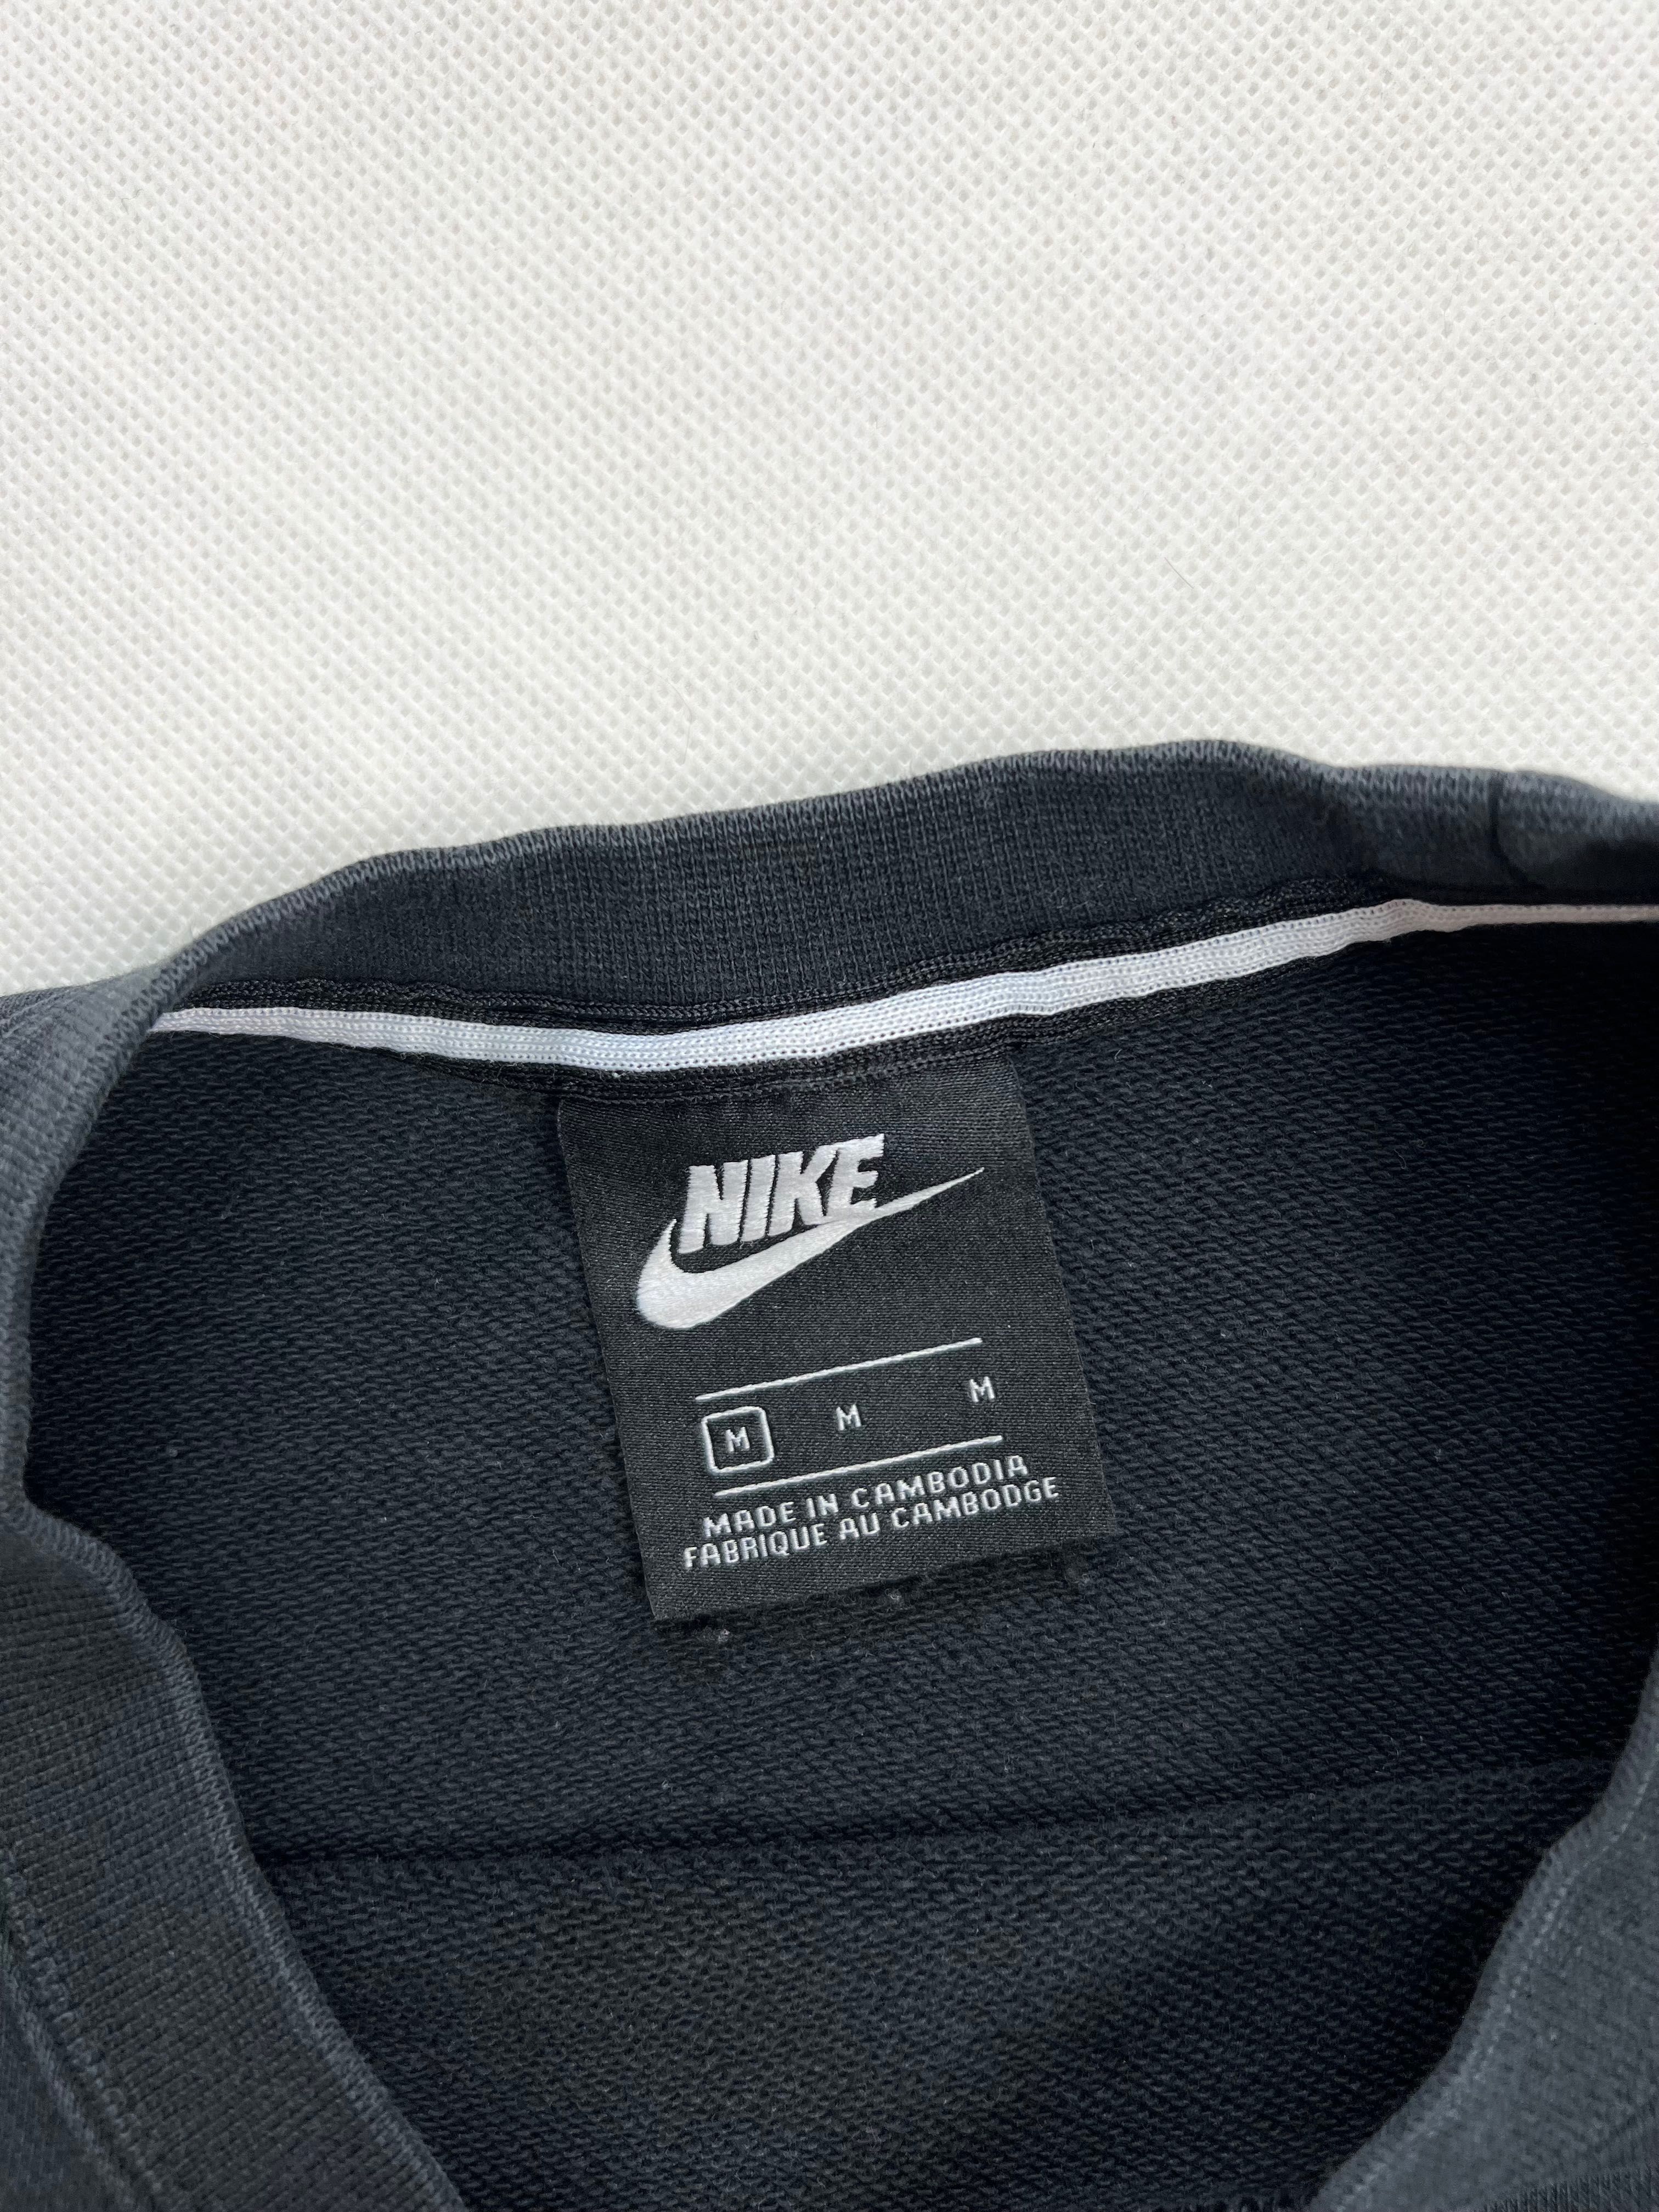 Bluza Nike center logo swoosh unisex